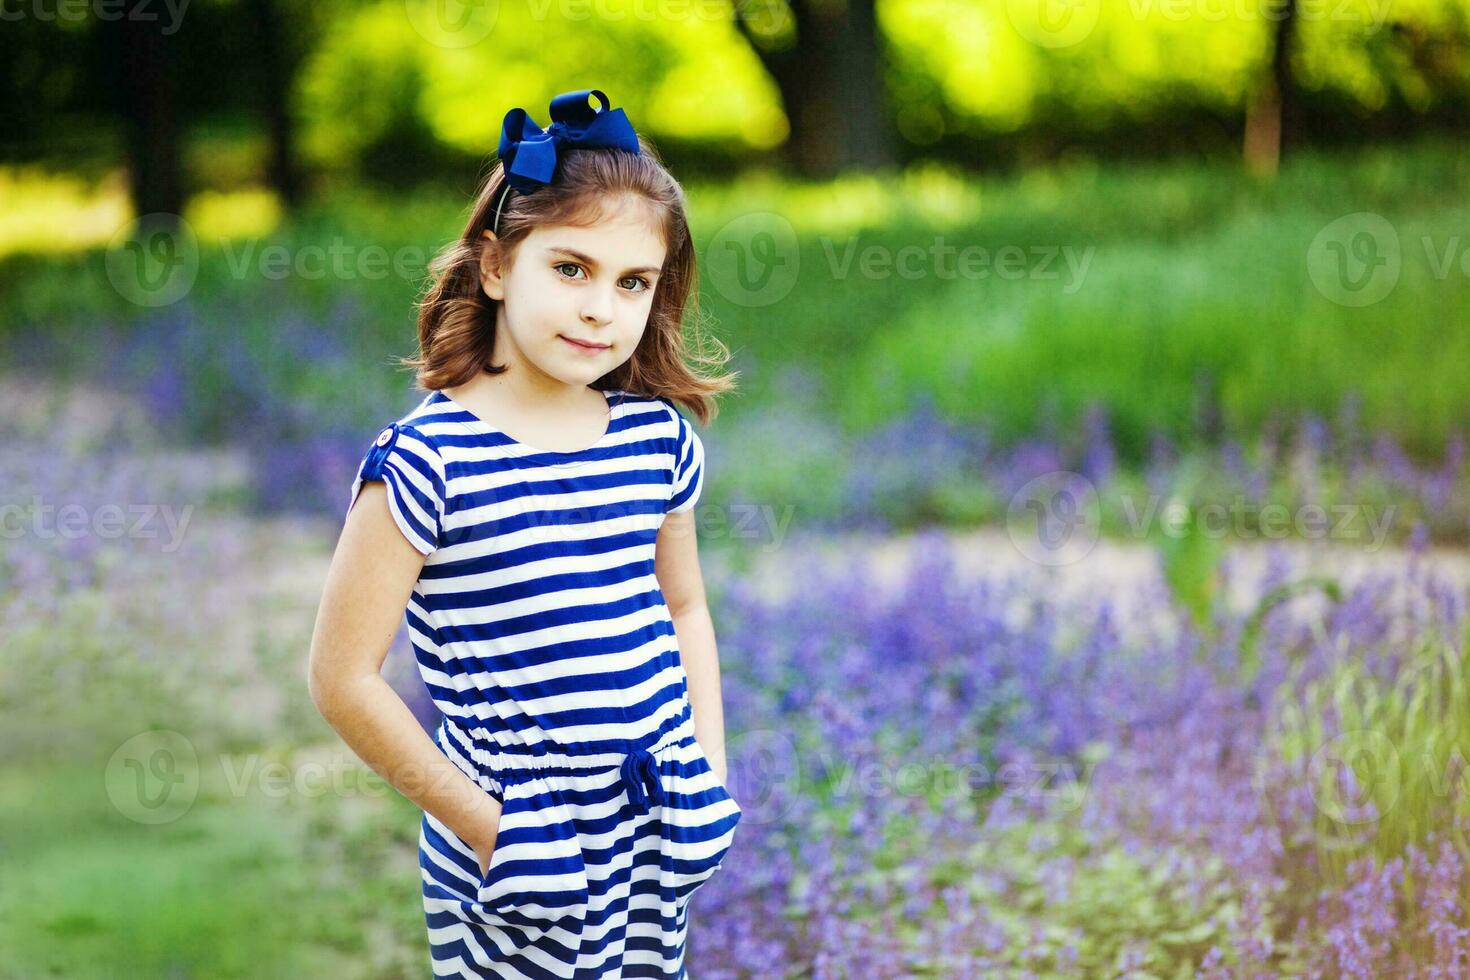 en liten flicka i en randig klänning stående i en fält av lavendel- foto